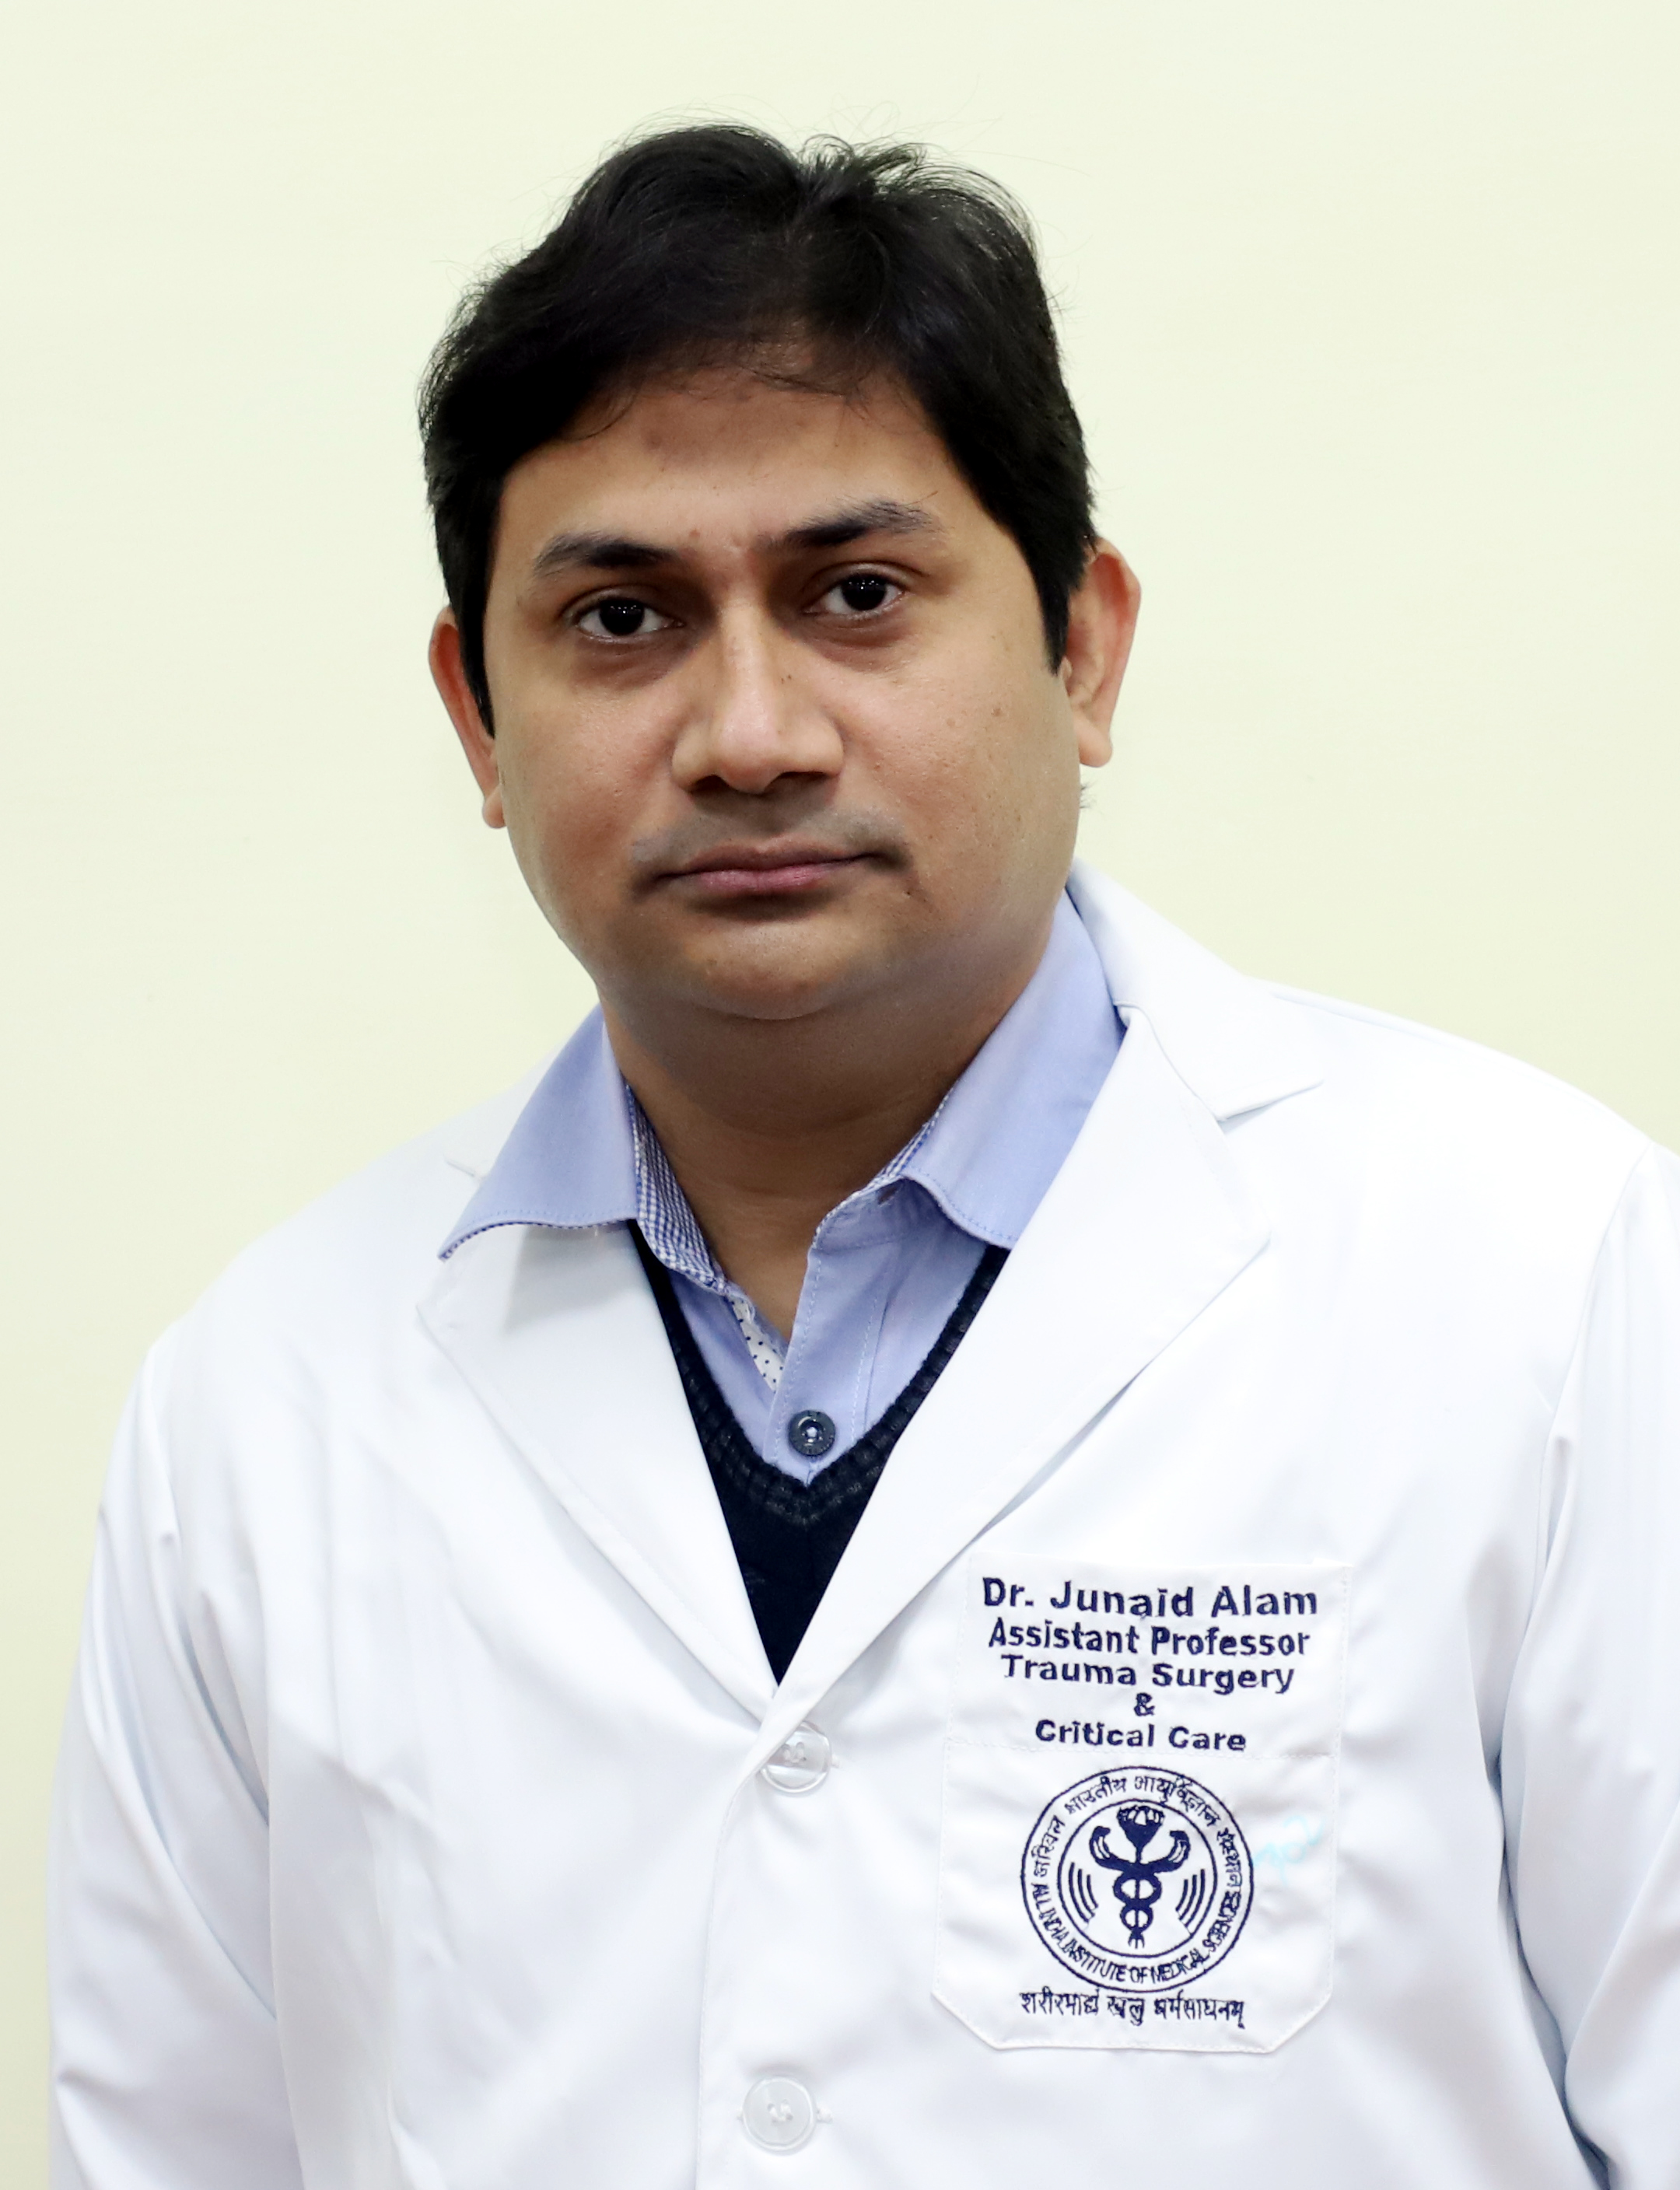 Dr. Junaid Alam